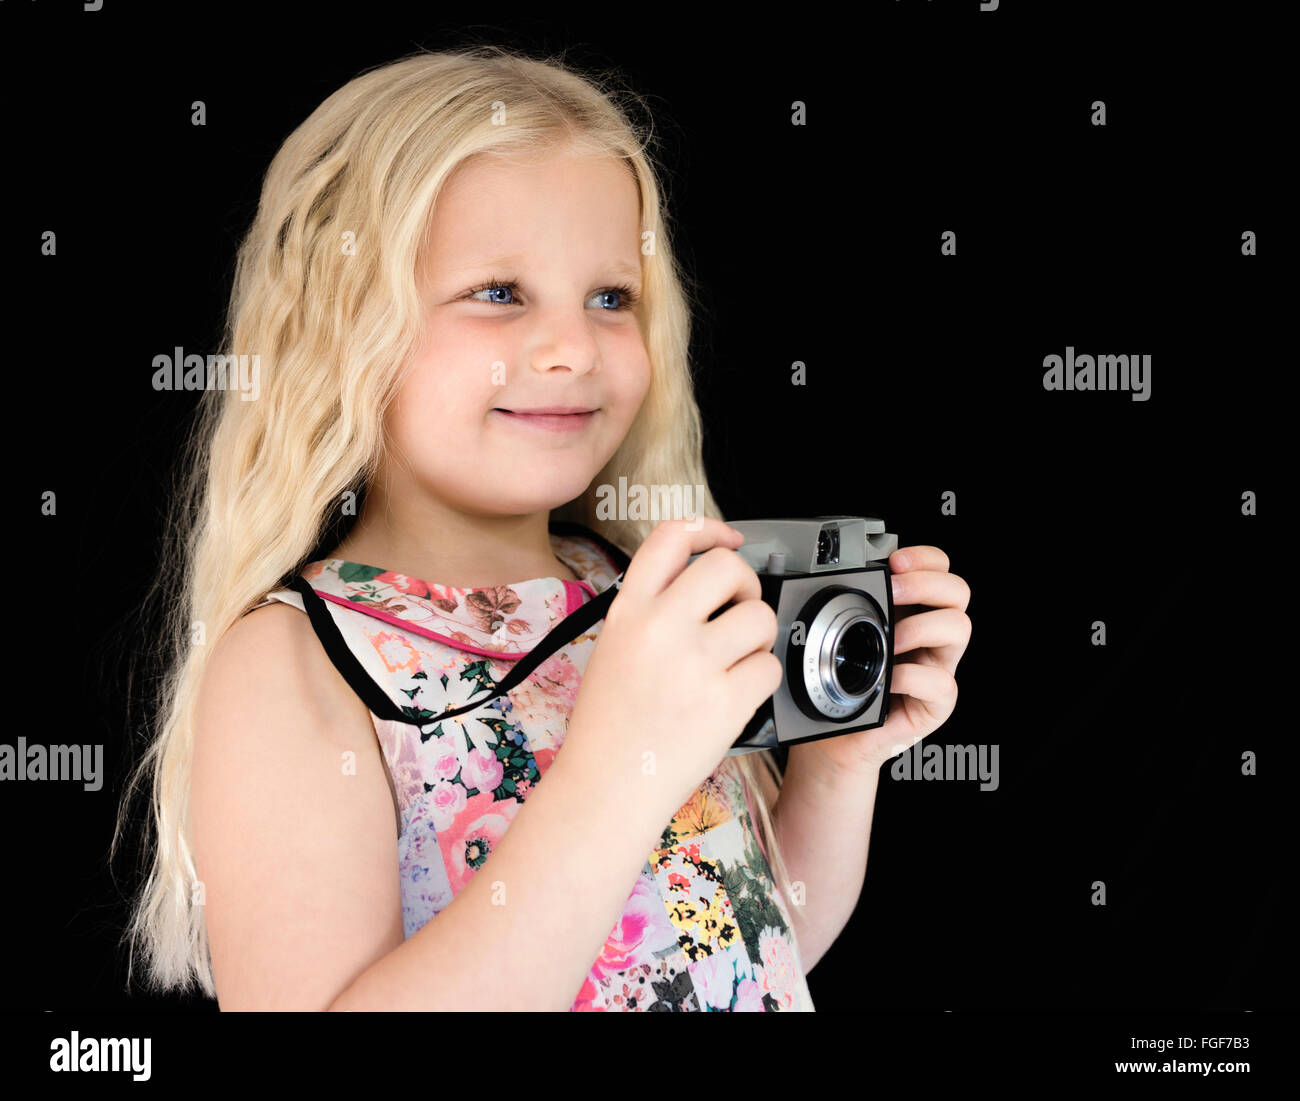 Jeune fille avec de longs cheveux blonds tenant un appareil photo vintage smiling Banque D'Images